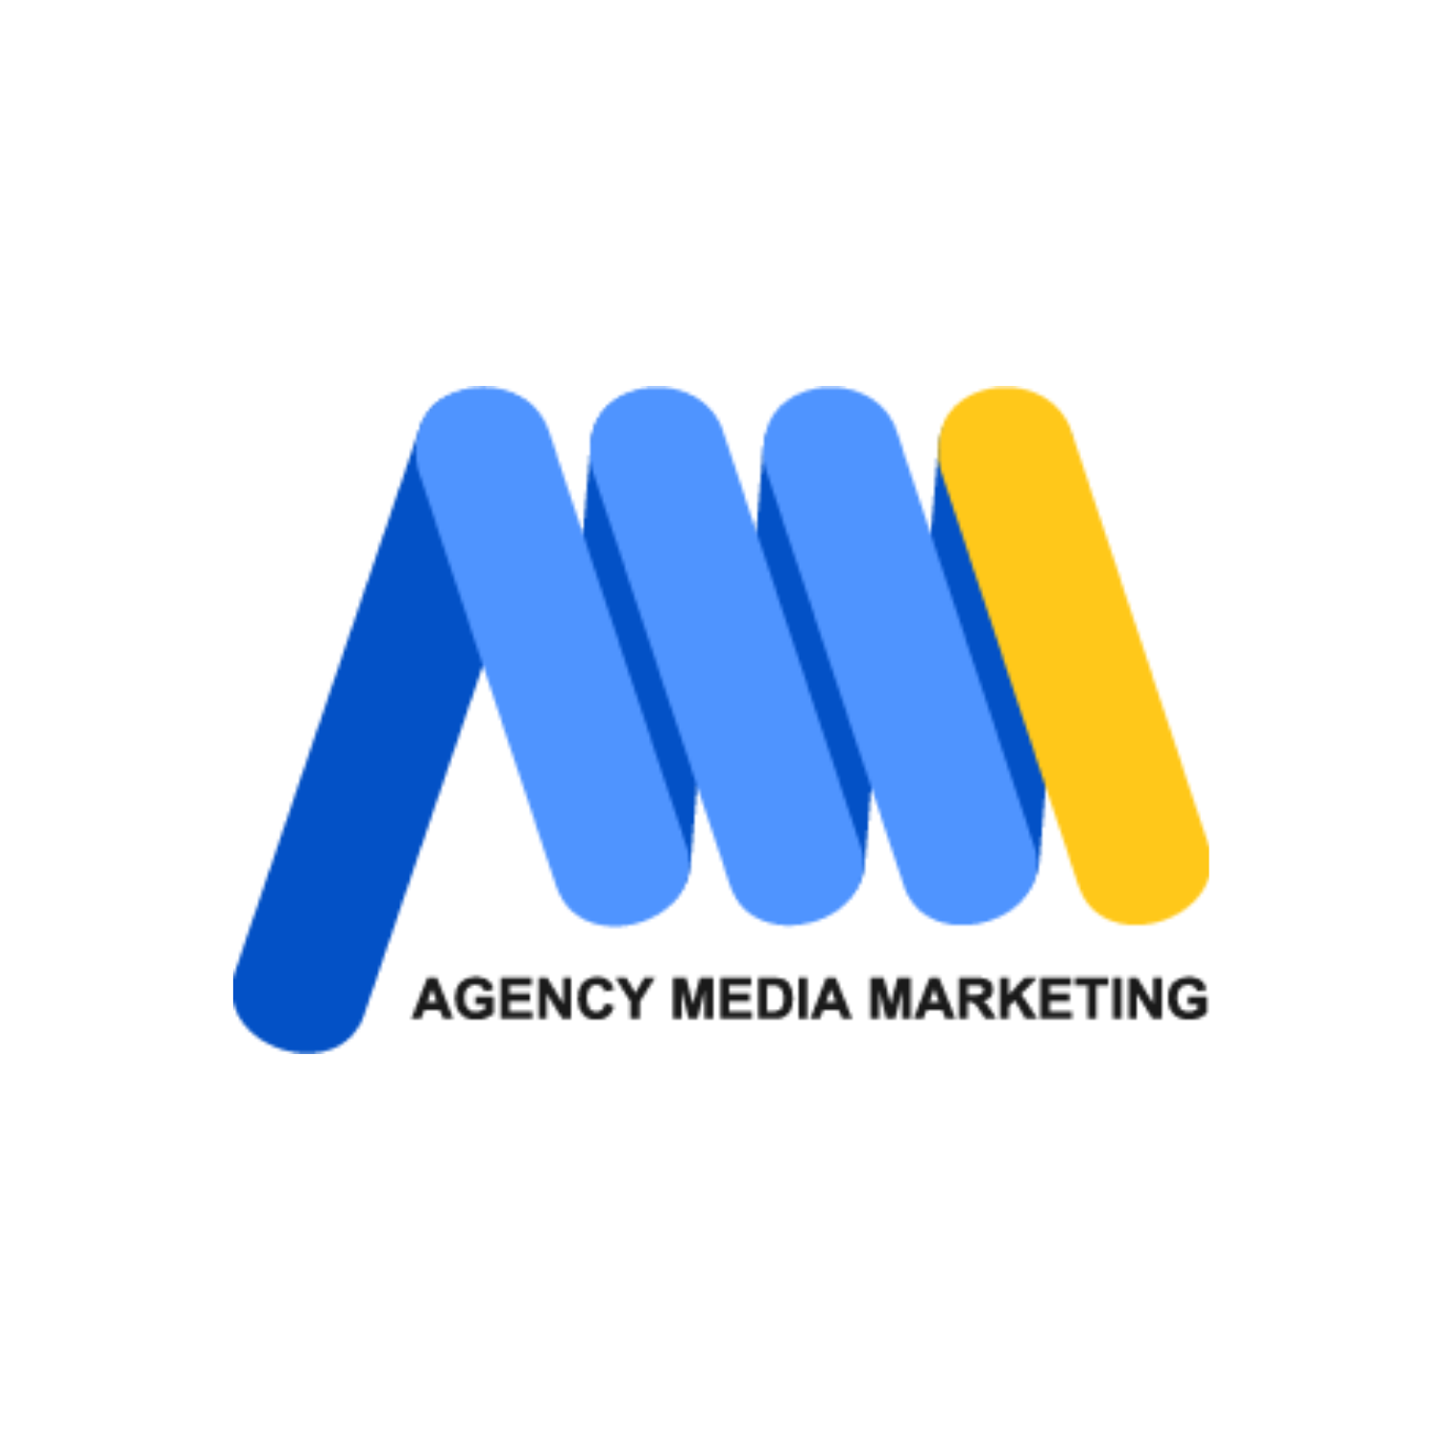 Российская маркетинговая компания "Agency Media Marketing" - GrandActive